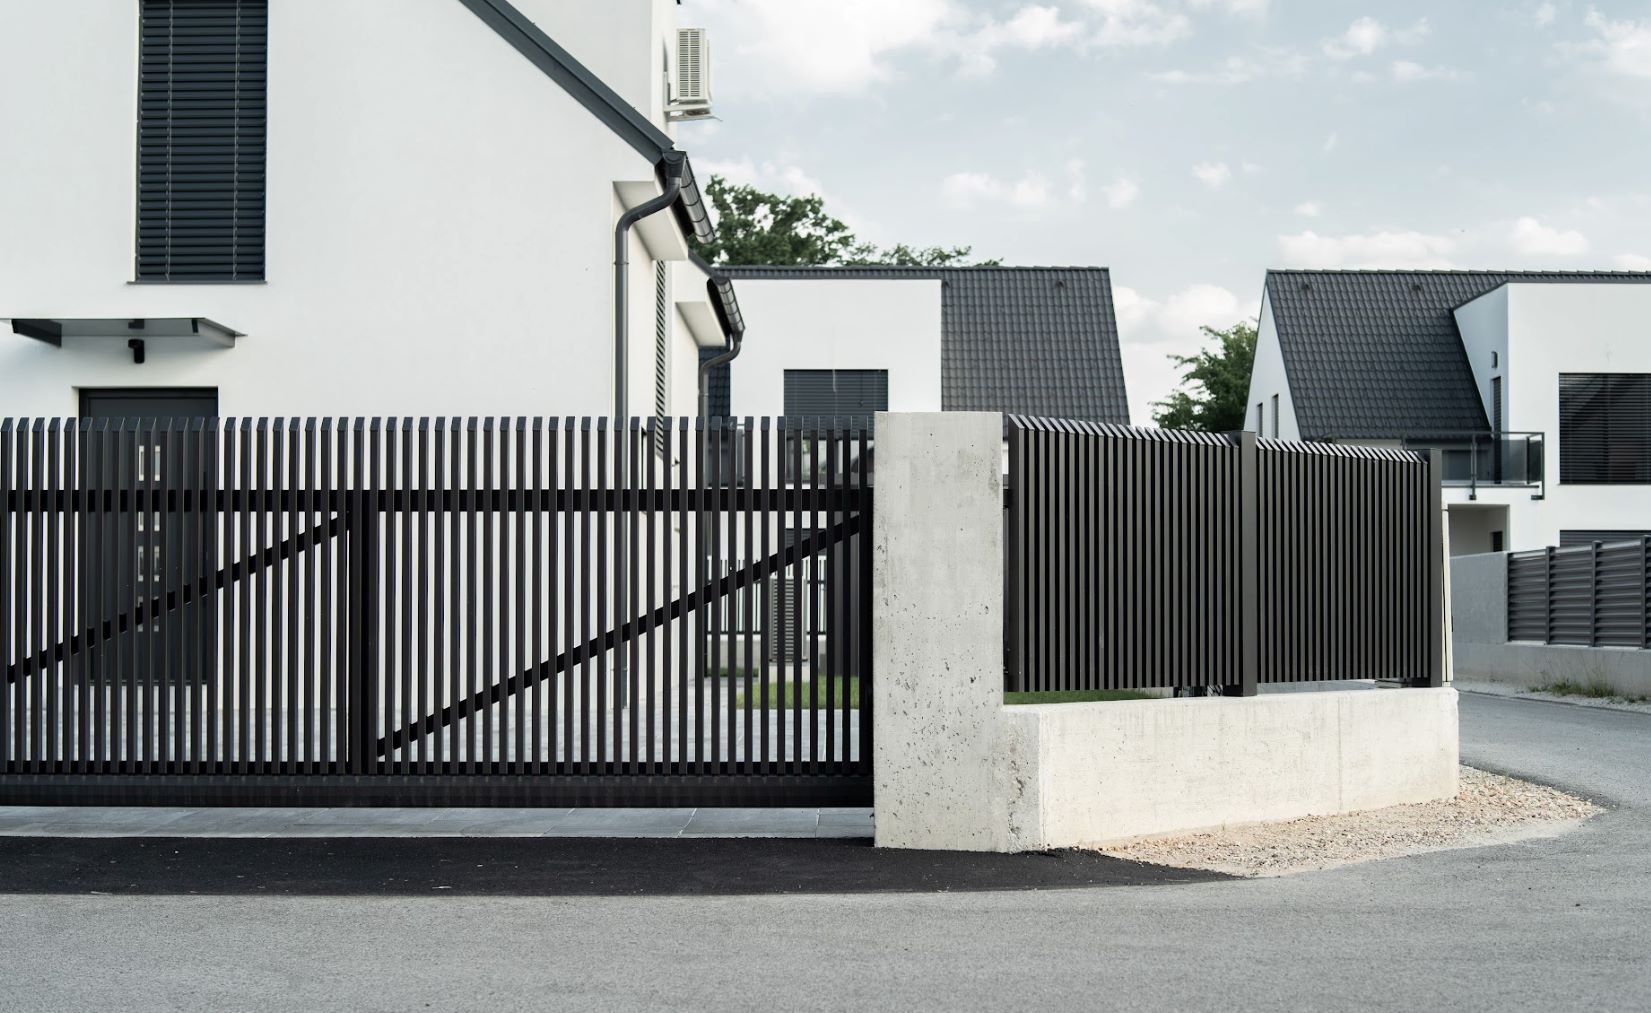 Sodobna arhitektura in izbira ograje – spoznaj raznolikost stilov Guardi ograj!